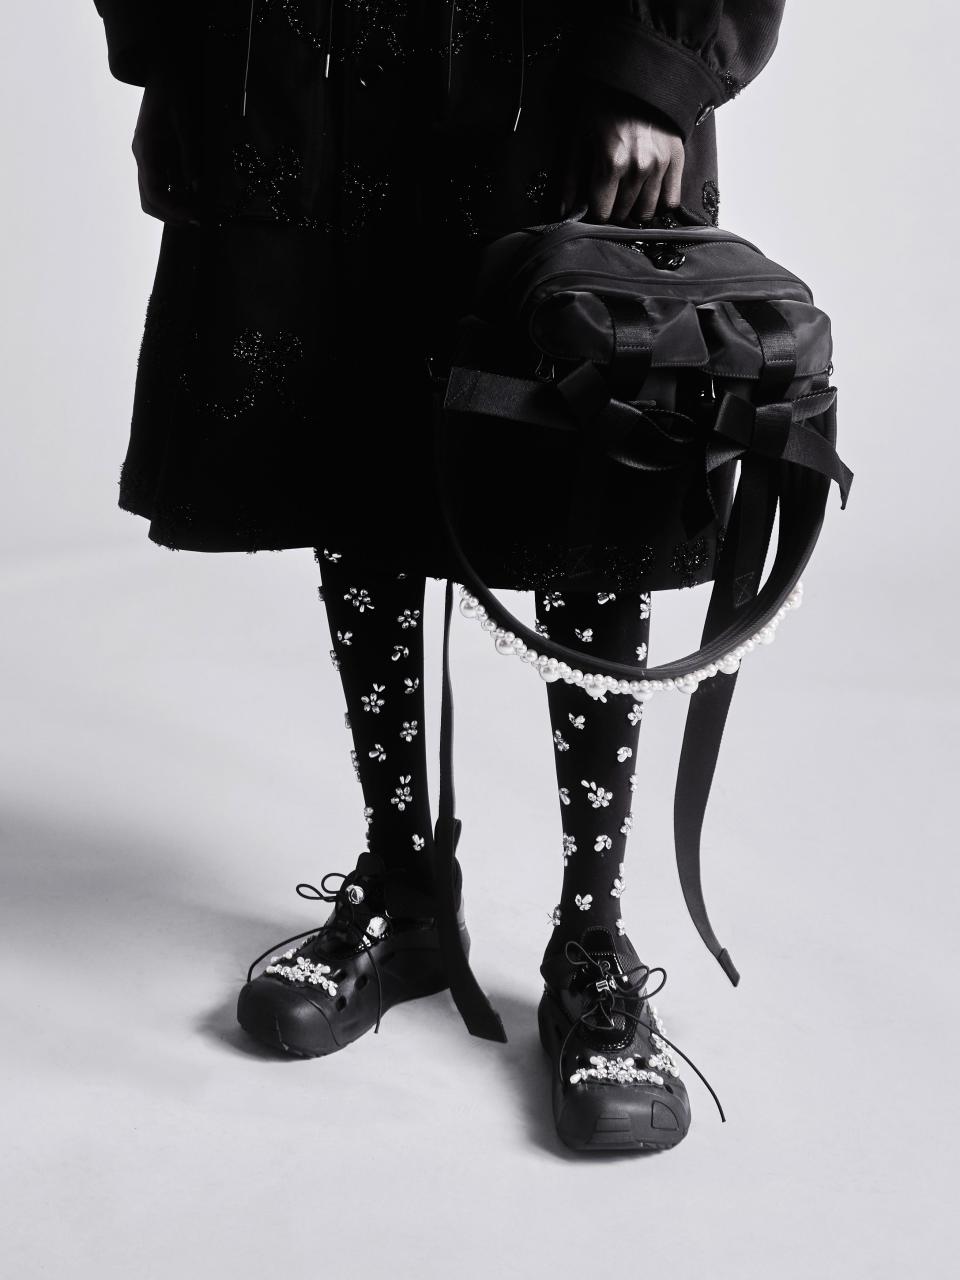 Fashion designer Simone Rocha launches bedazzled Crocs collaboration ...